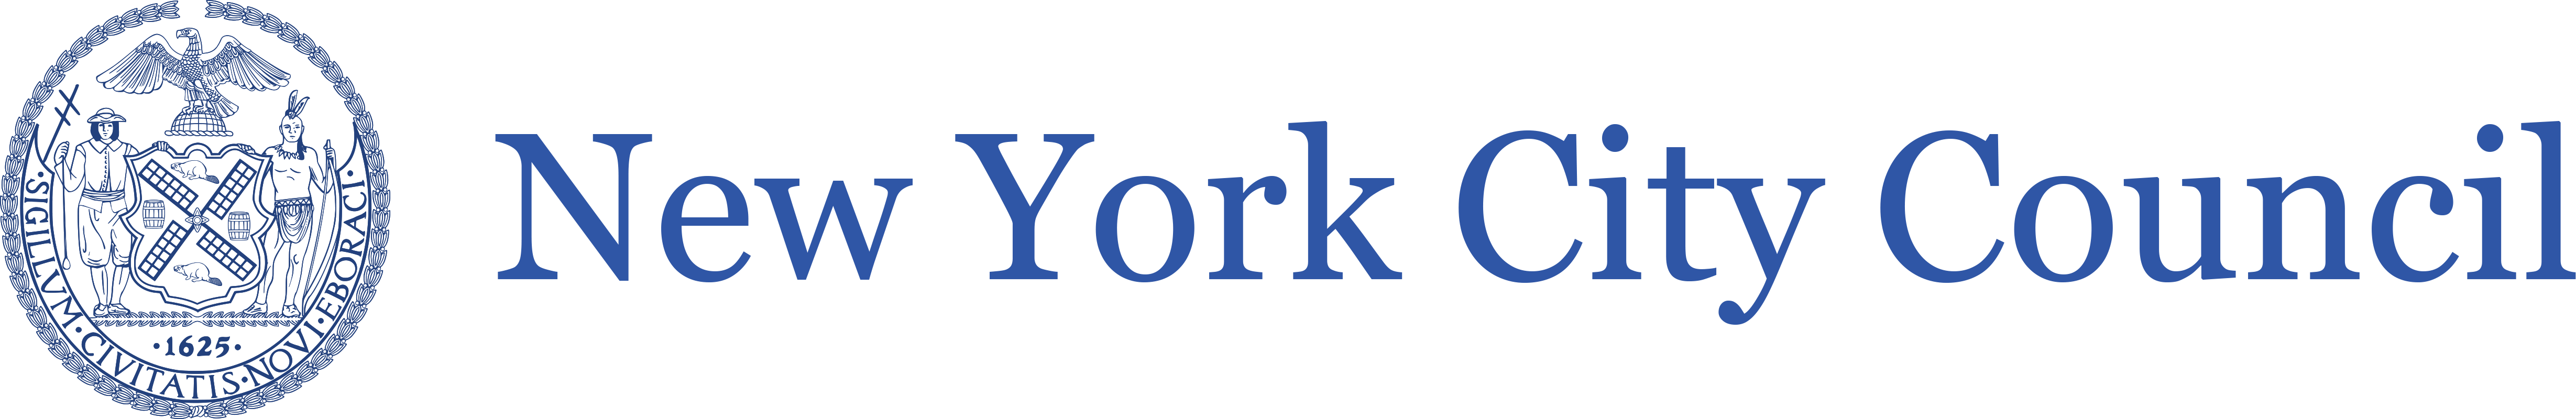 NYC Council Logo